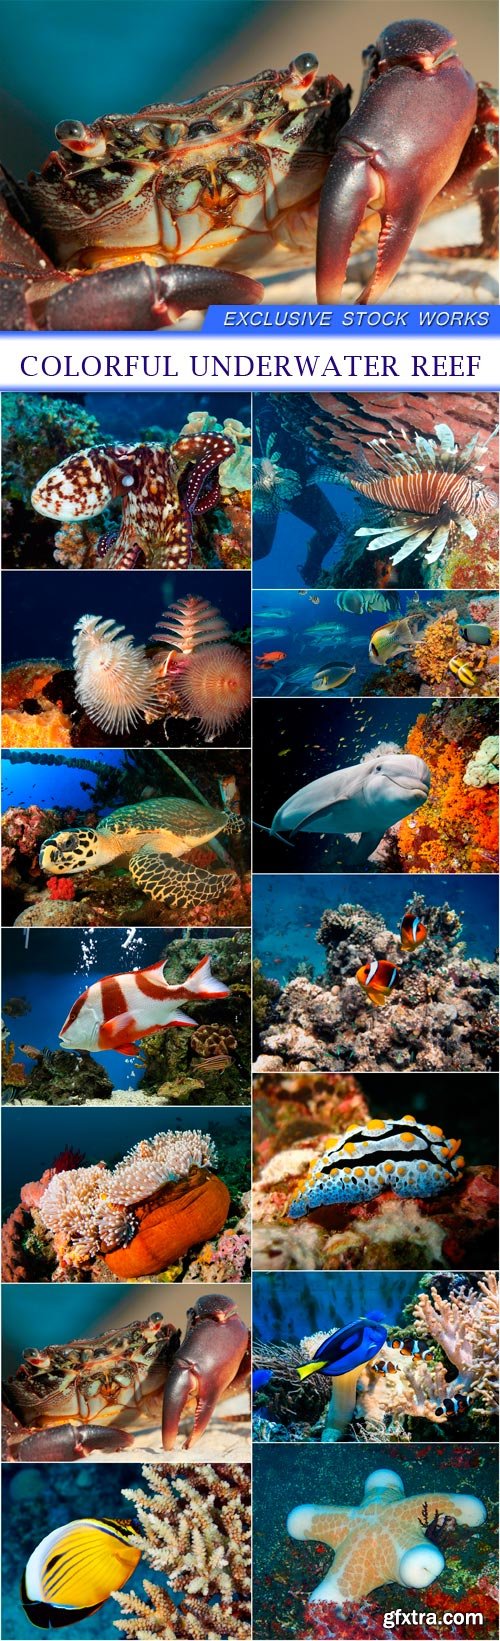 Colorful underwater reef 14X JPEG